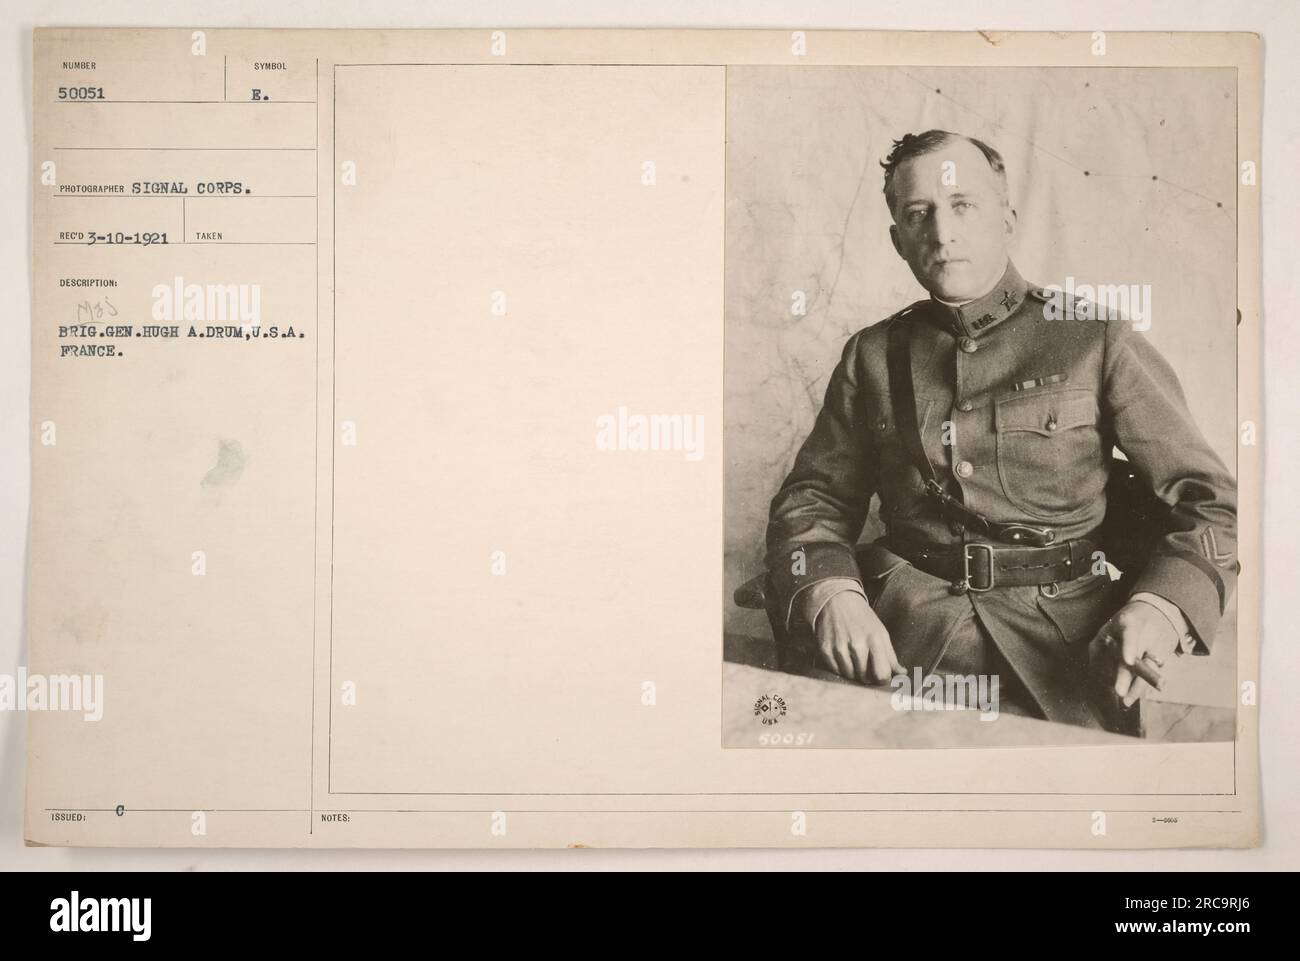 Il maggiore generale Hugh A. Drum degli Stati Uniti Esercito in Francia. Fotografia scattata dal Signal Corps, datata 10 marzo 1921. L'immagine è etichettata con il codice 'IRSIED C B.'. La descrizione riporta 'Mas BRIG.GEN.HUGH A.DRUM, U.S.A. FRANCIA.' Le note indicano "50051 ha". Foto Stock